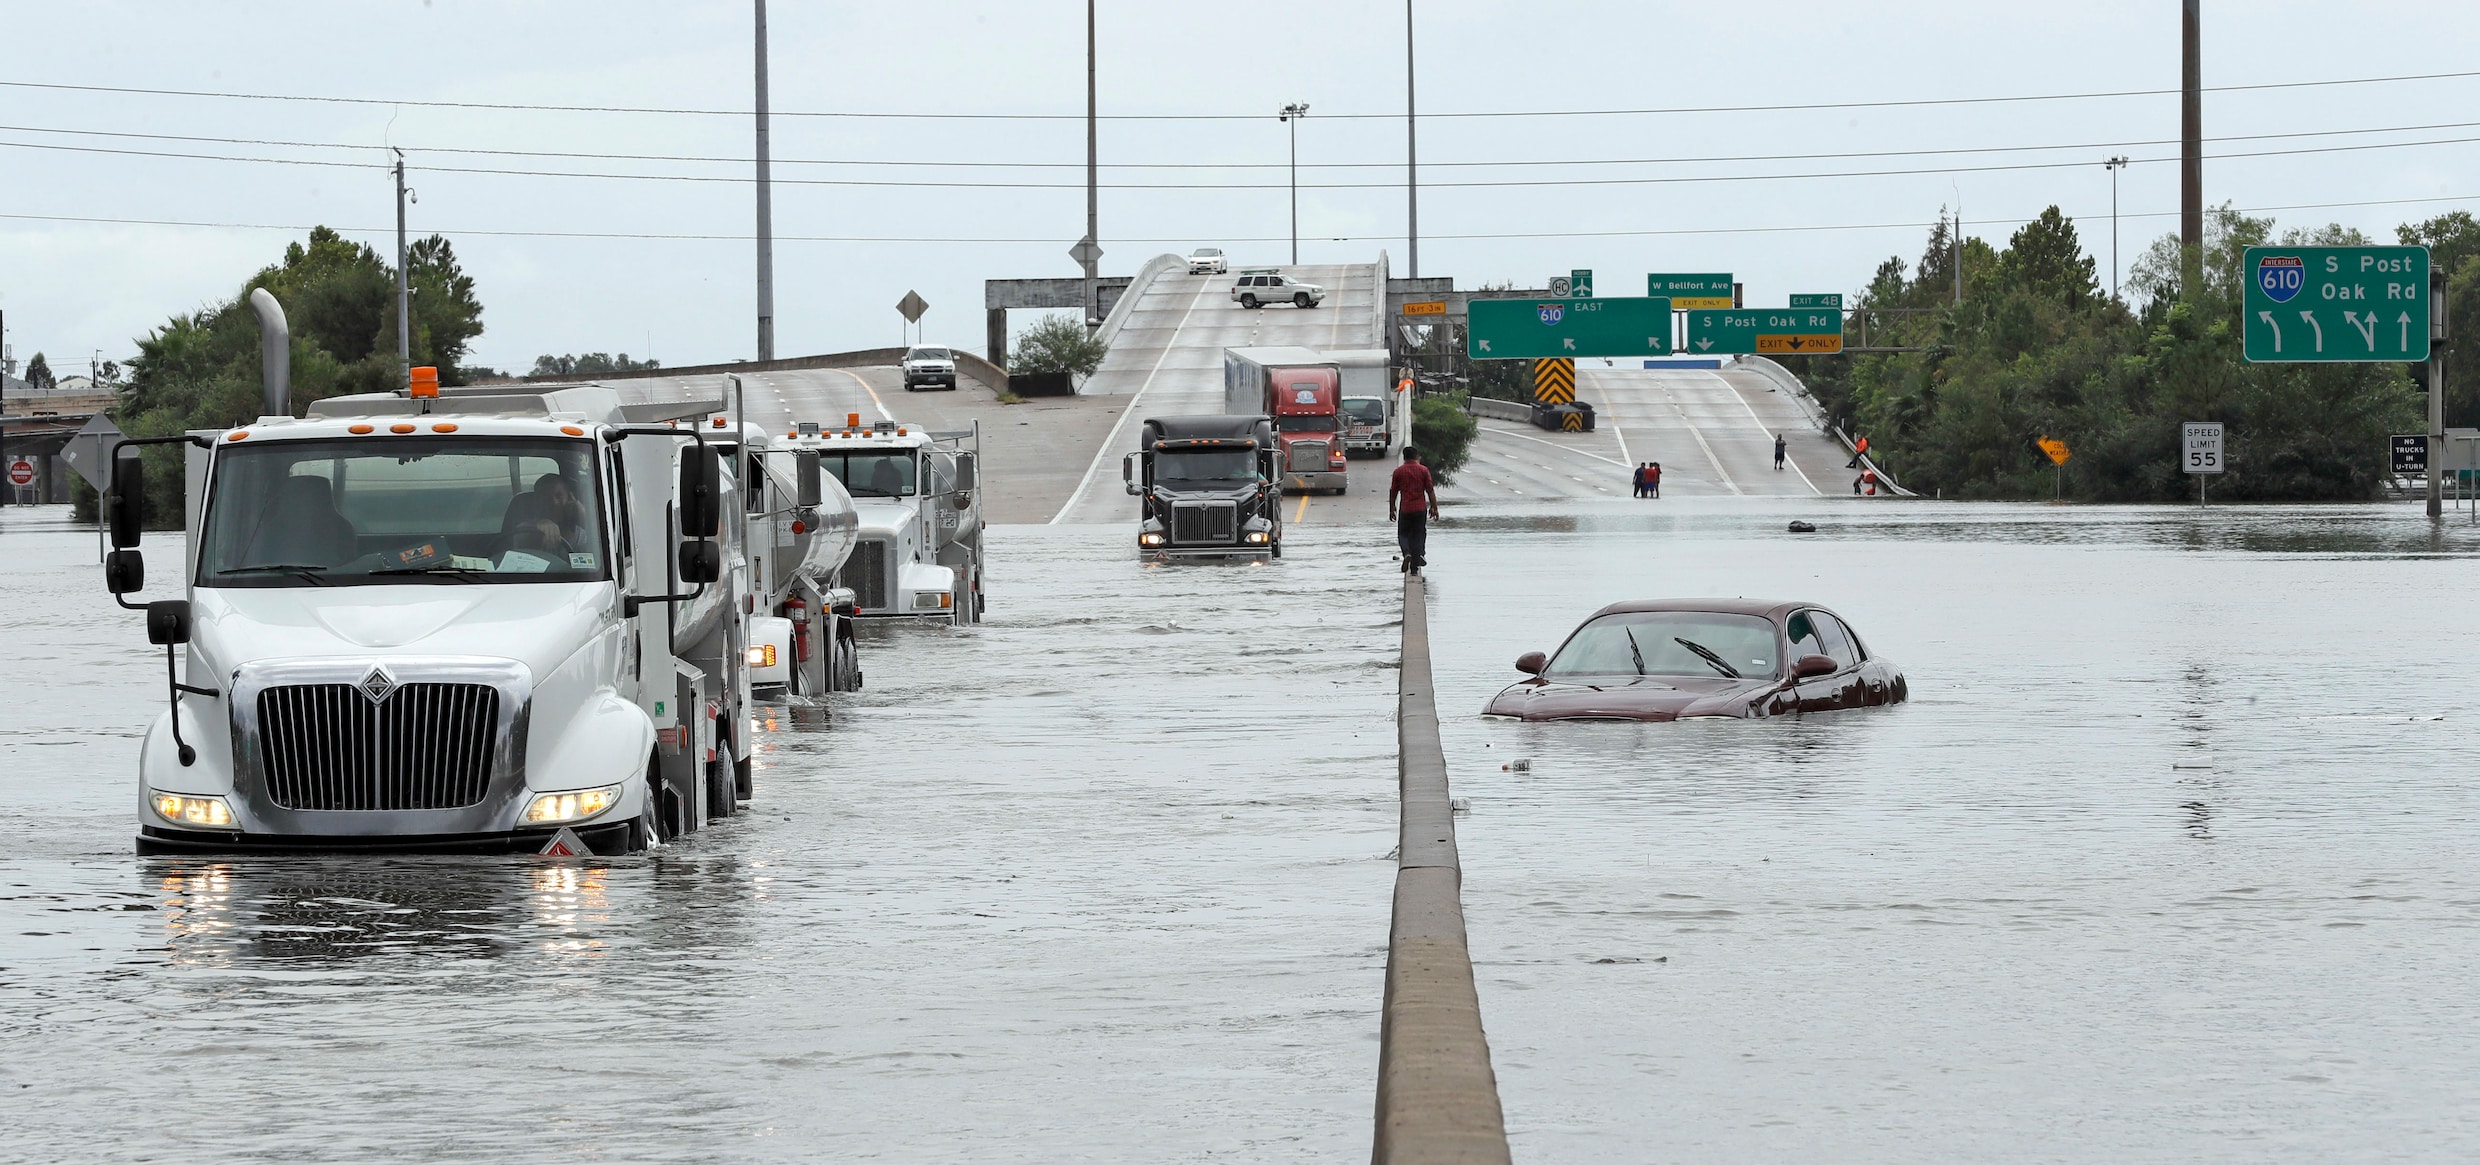 Ergste overstromingen ooit in VS na orkaan Harvey: "En het wordt nog erger"